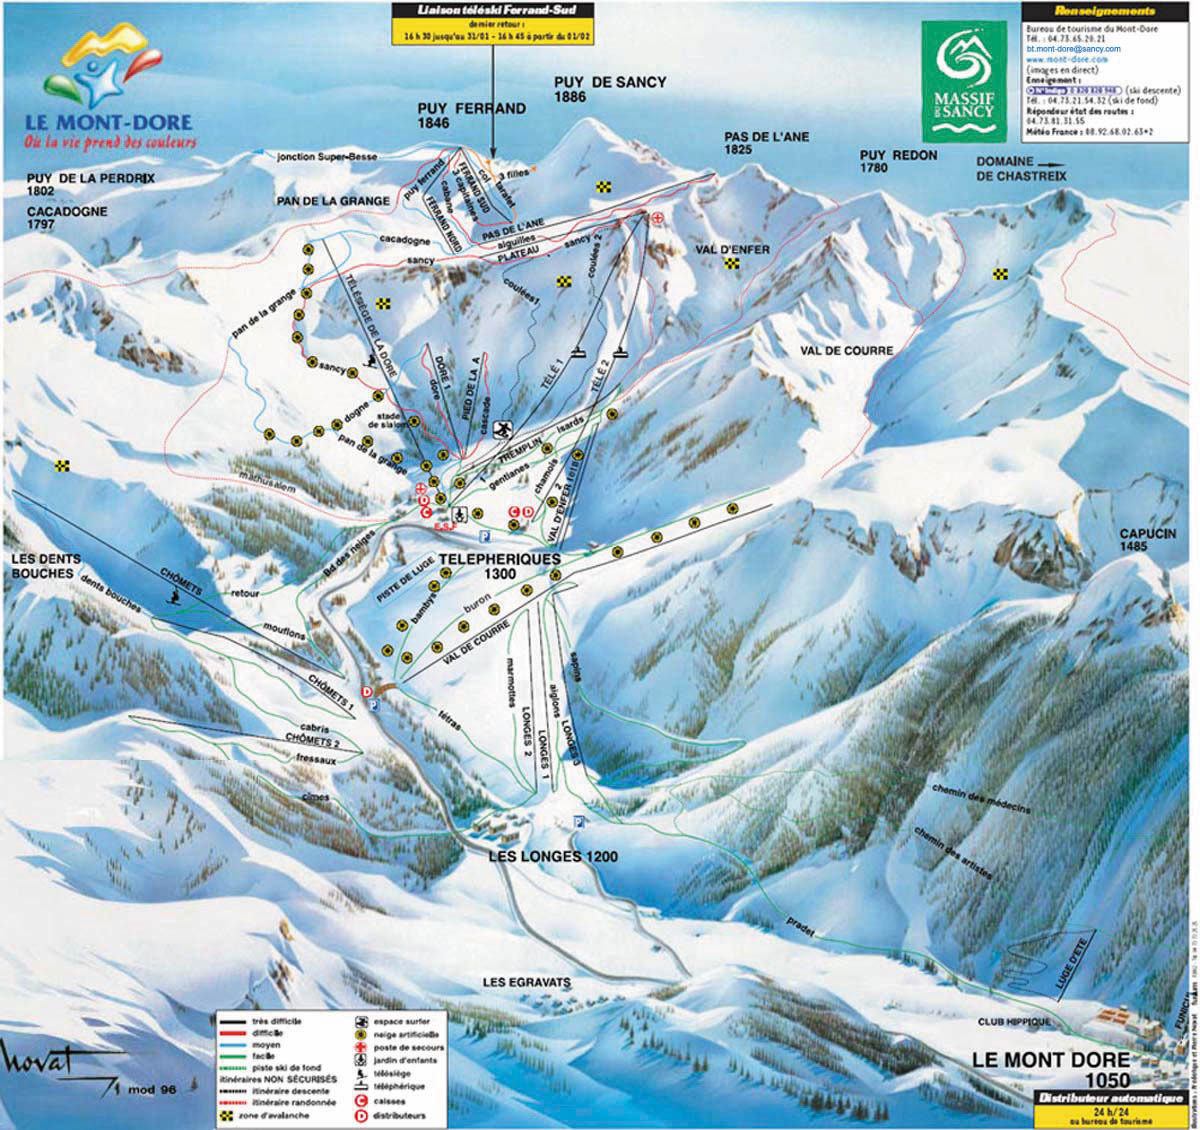 Le Mont-Dore Piste / Trail Map